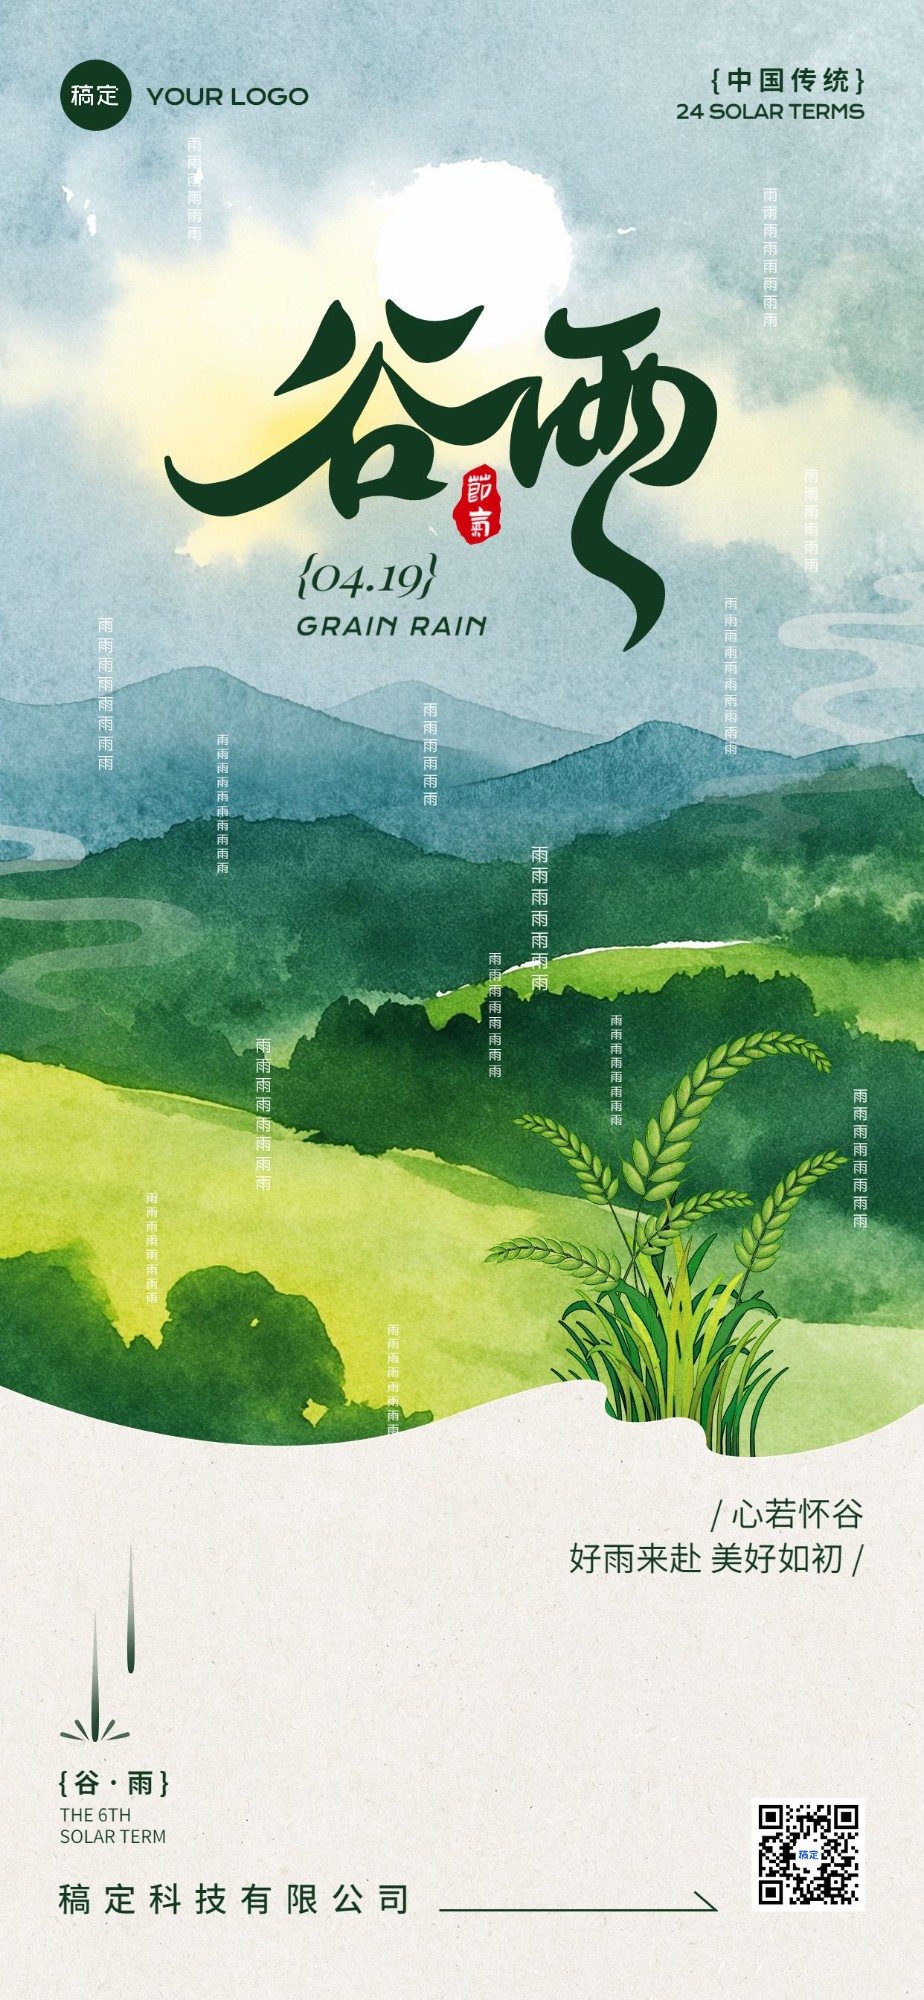 企业谷雨节气祝福插画风全屏竖版海报AIGC预览效果